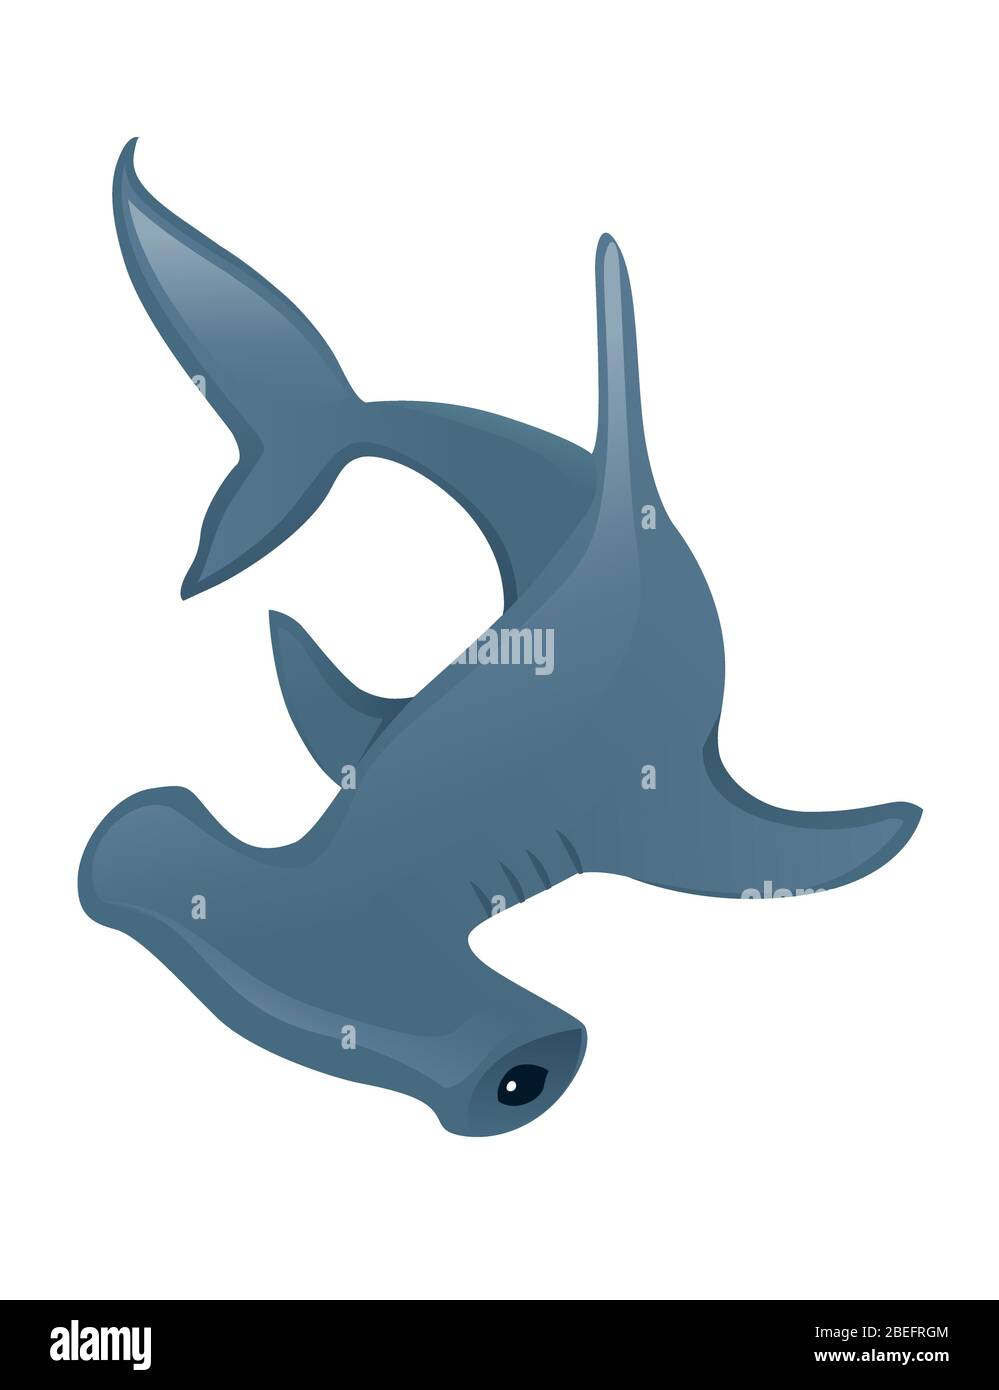 Requin martelé animal géant sous-marin dessin de personnage dessin de dessin animé plat illustration vectorielle isolée sur fond blanc Illustration de Vecteur